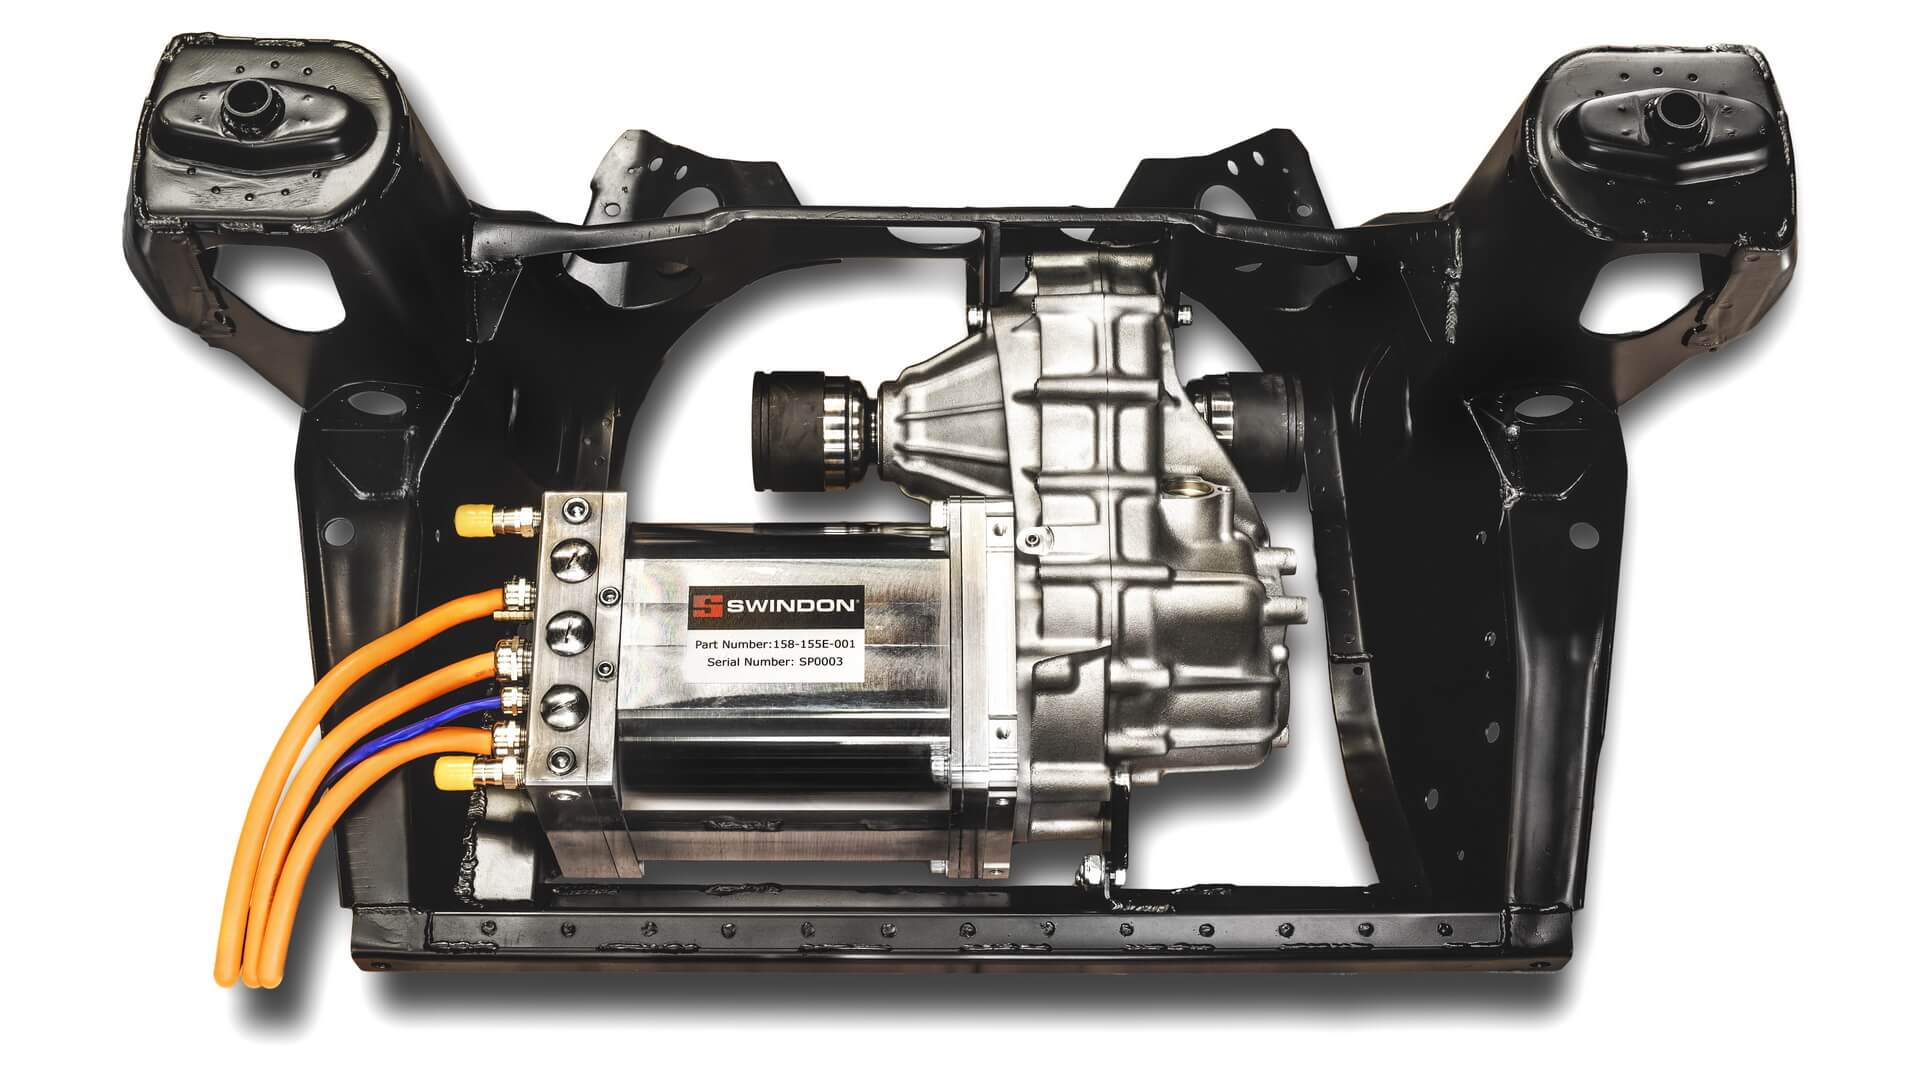 Комплект для переоборудования классического MINI в электромобиль включает электродвигатель HPD E и набор кронштейнов